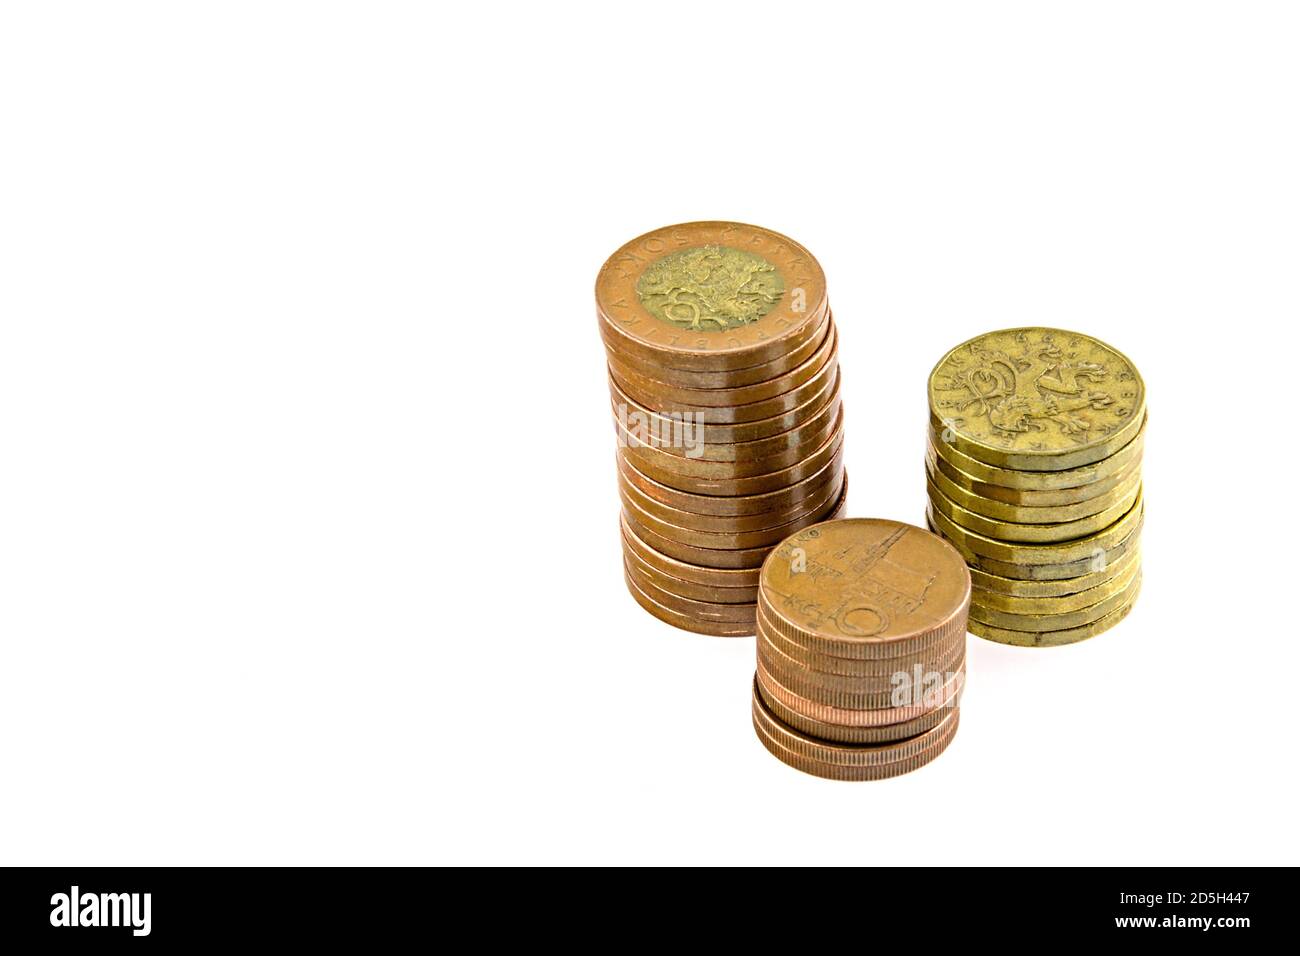 Tschechisches Geld, Münzsäulen, isoliert auf weißem Hintergrund. 50 Kronenmünzen, 20 Kronenmünzen, 10 Kronenmünzen. Stockfoto